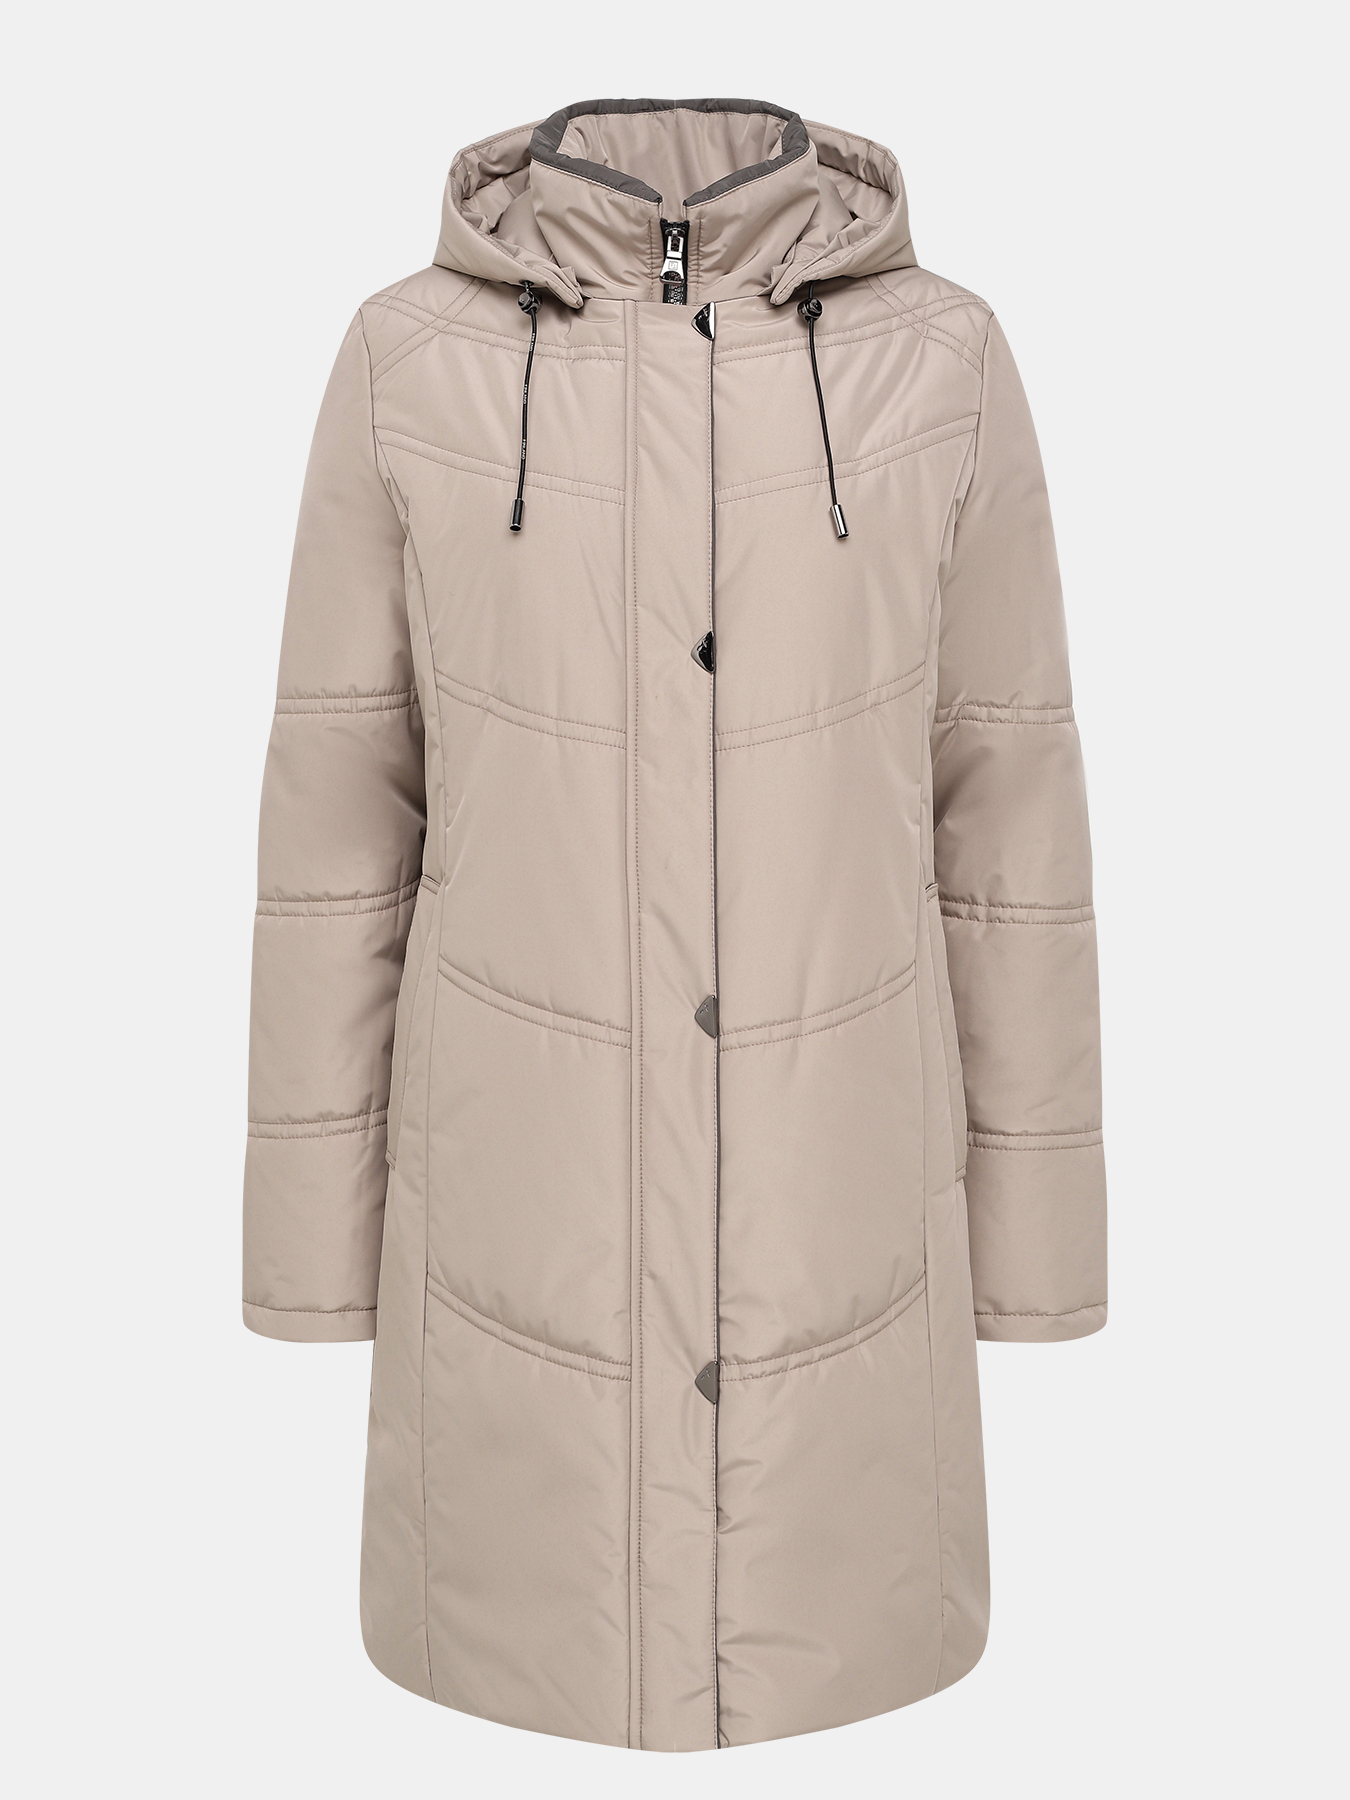 Пальто зимнее Maritta 433523-022, цвет бежевый, размер 48